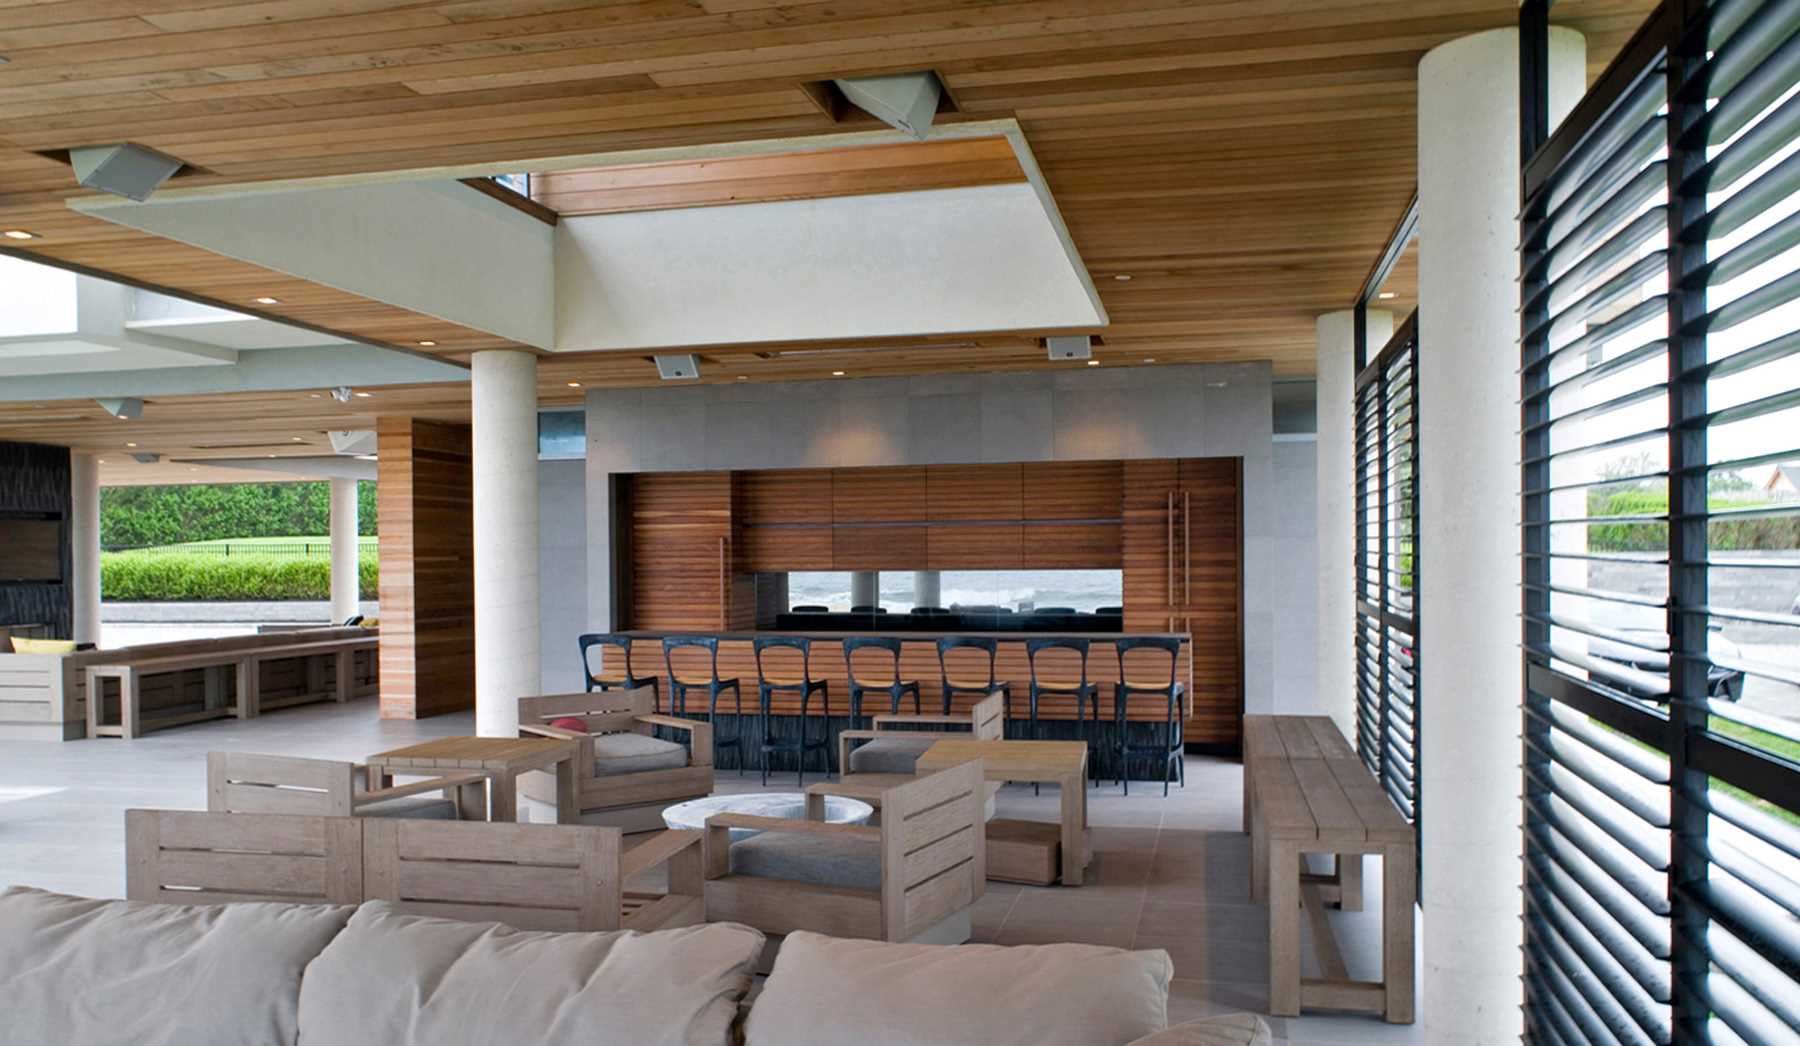 یک خانه مدرن ضد طوفان با یک منطقه سرگرمی در فضای باز گسترده که شامل یک چمن، است،، آشپزخانه در فضای باز، و مناطق نشیمن سرپوشیده است.